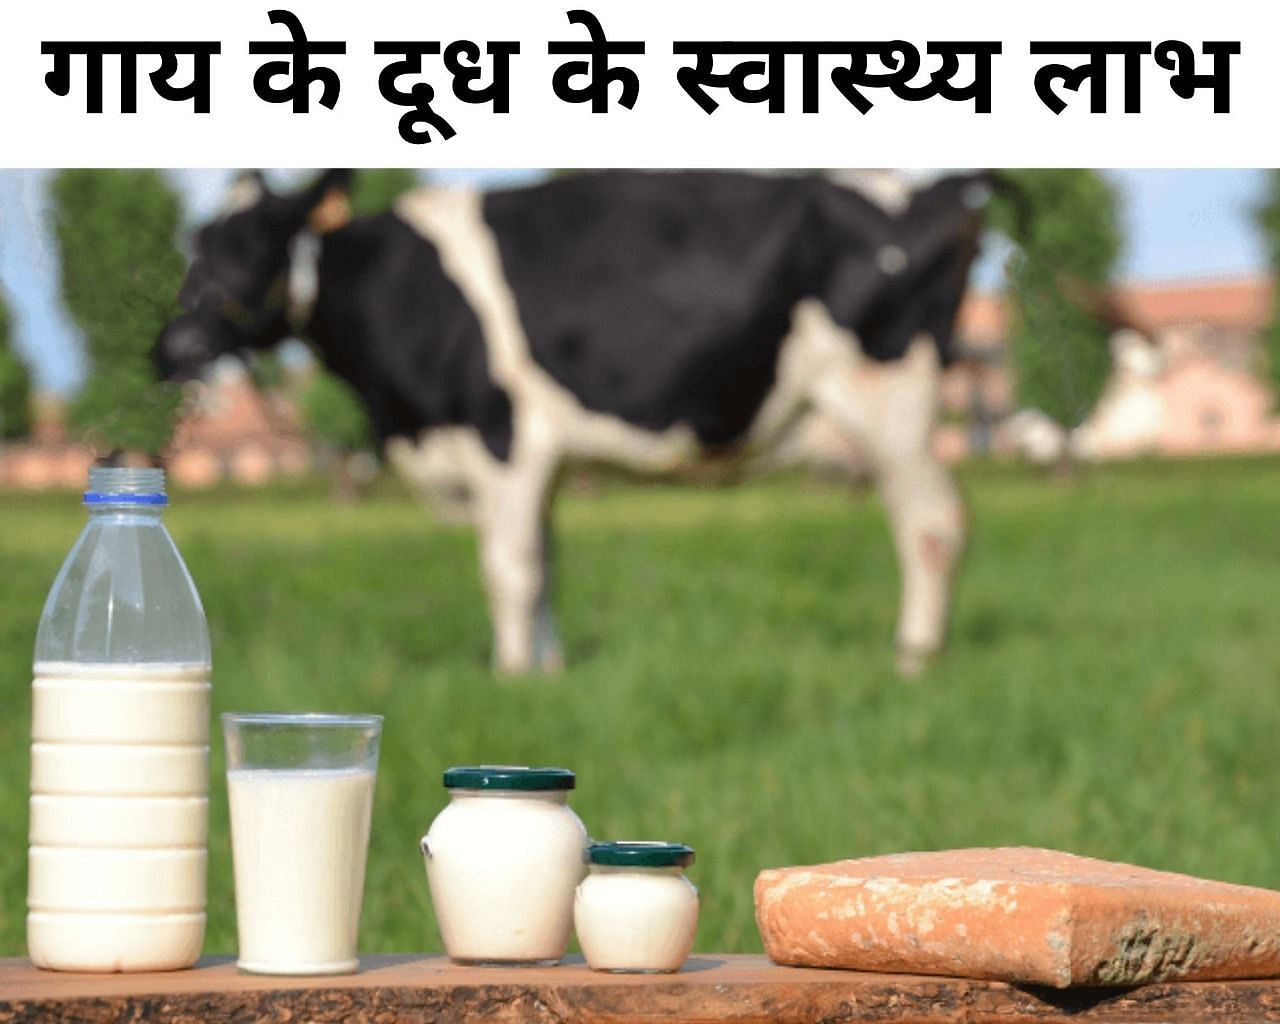 गाय के दूध के 5 स्वास्थ्य लाभ (फोटो - sportskeedaहिन्दी)